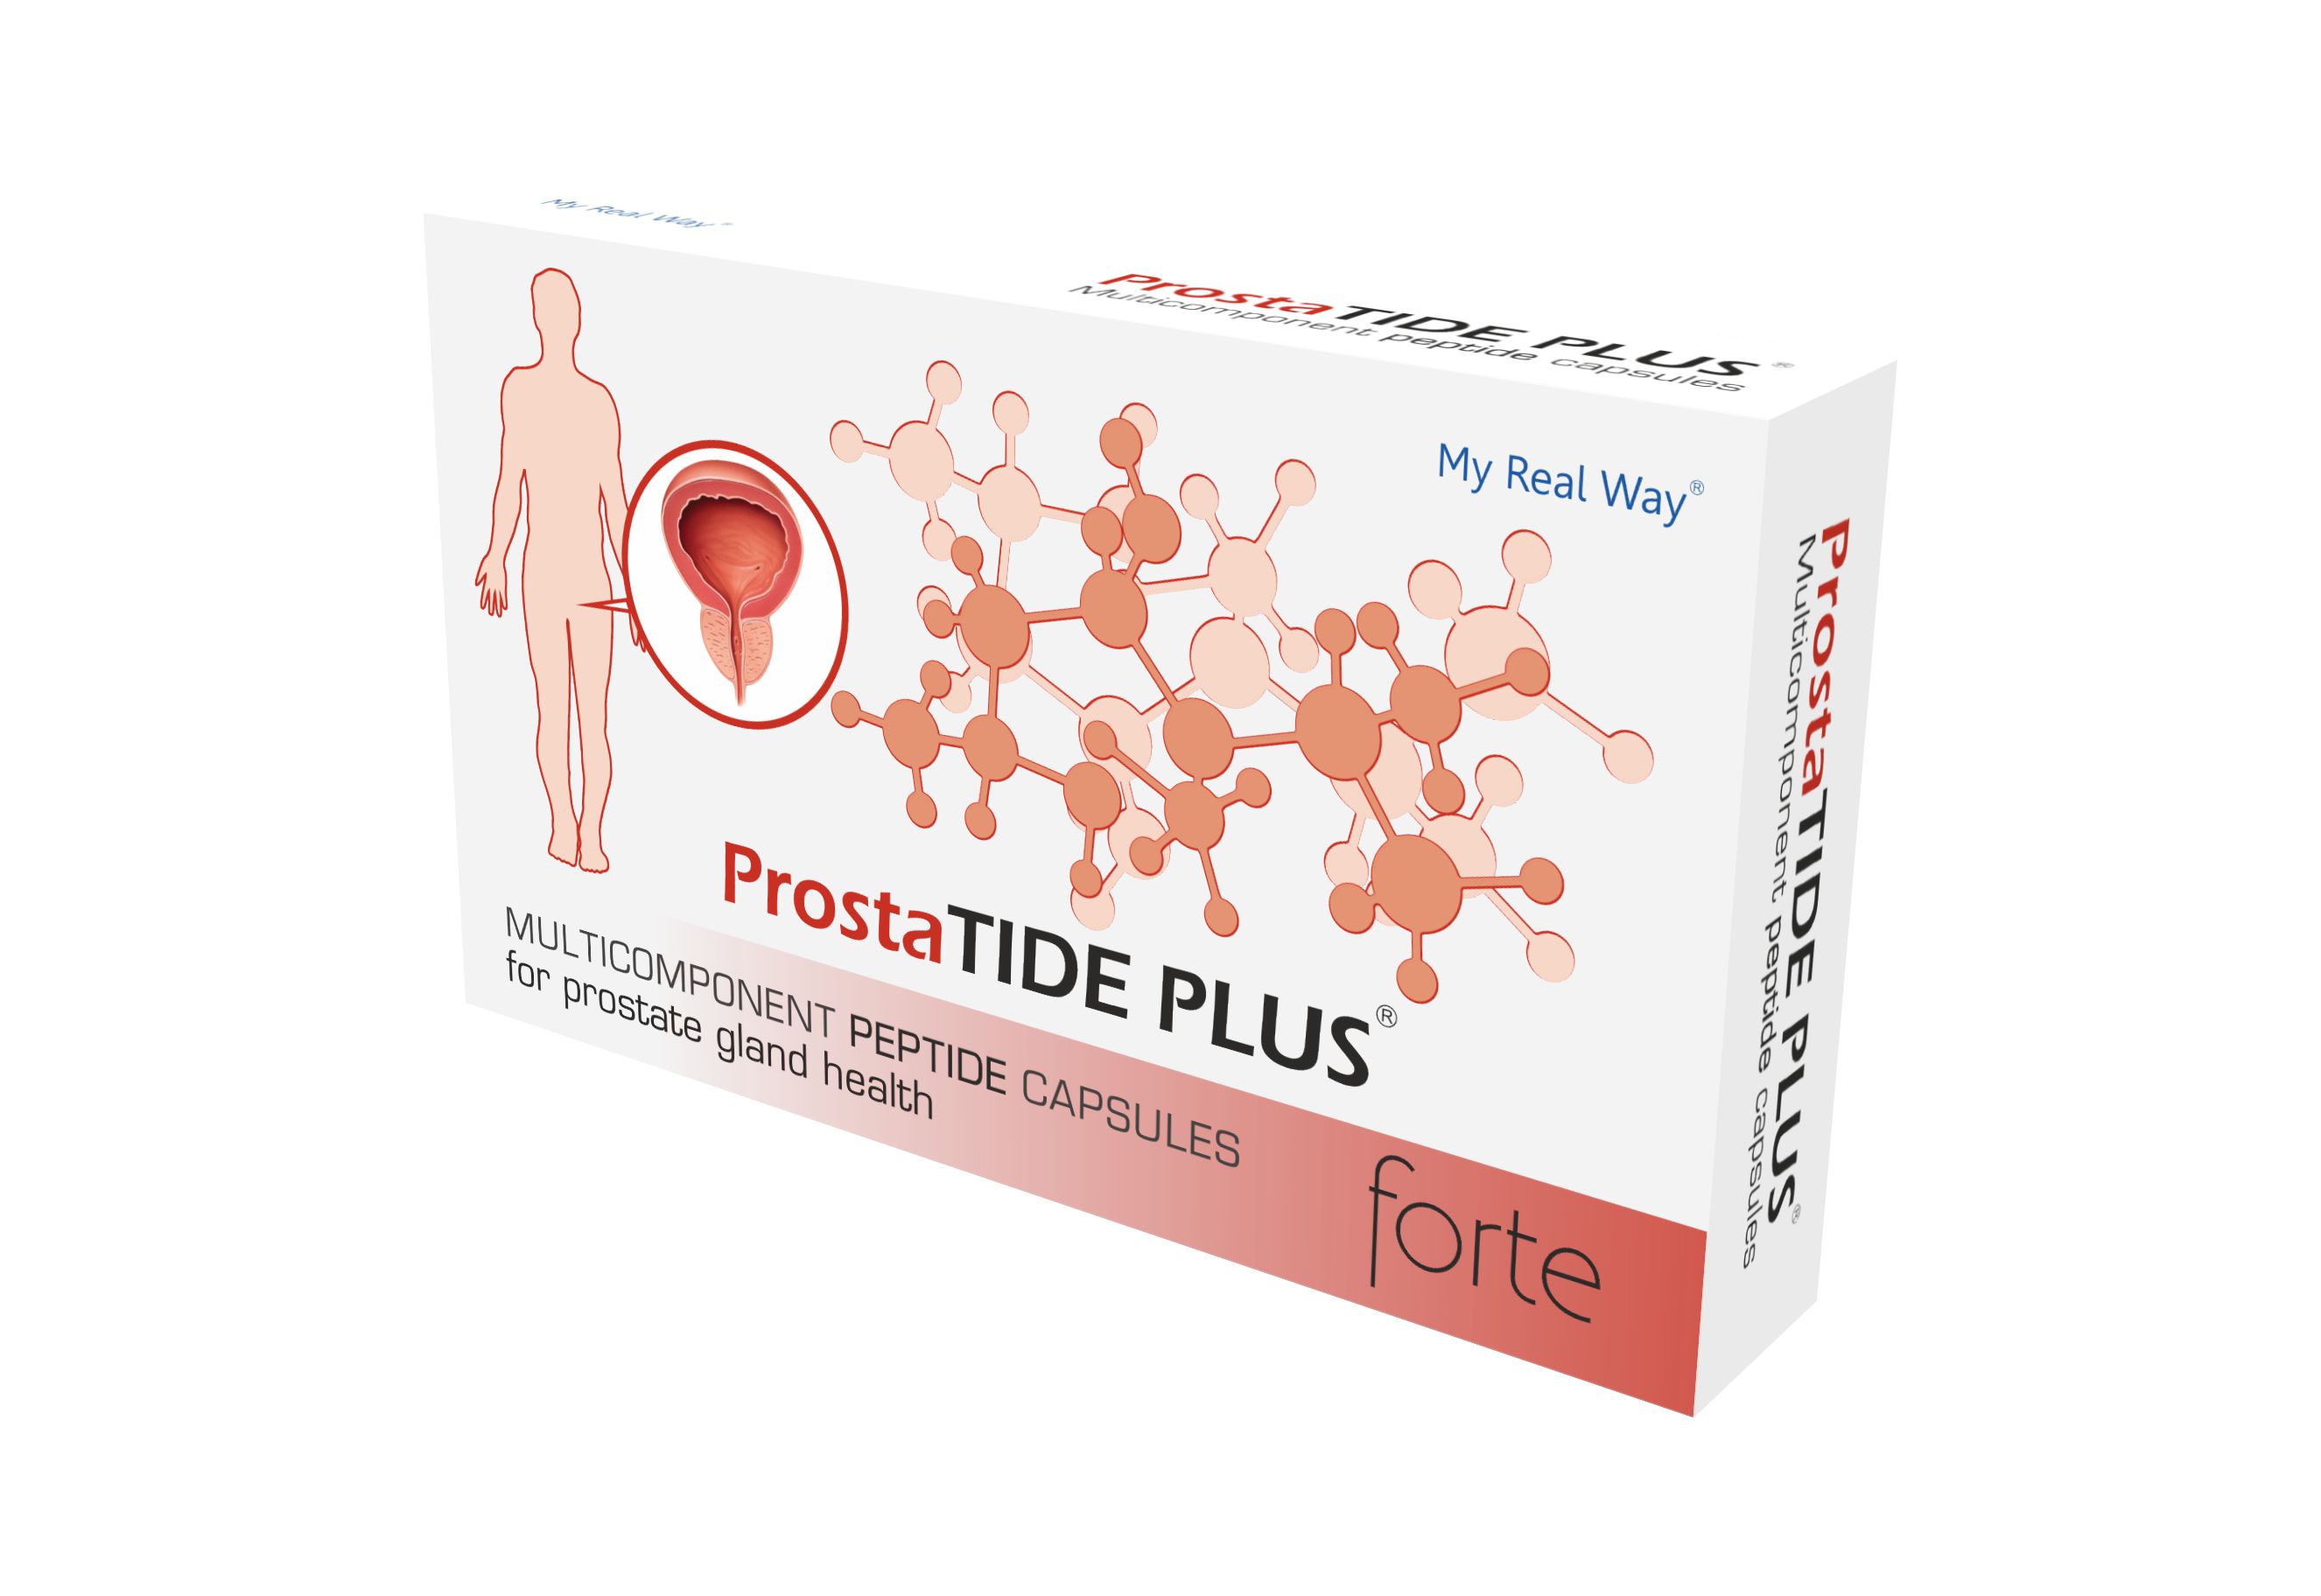 ProstaTIDE PLUS forte peptides for prostate gland